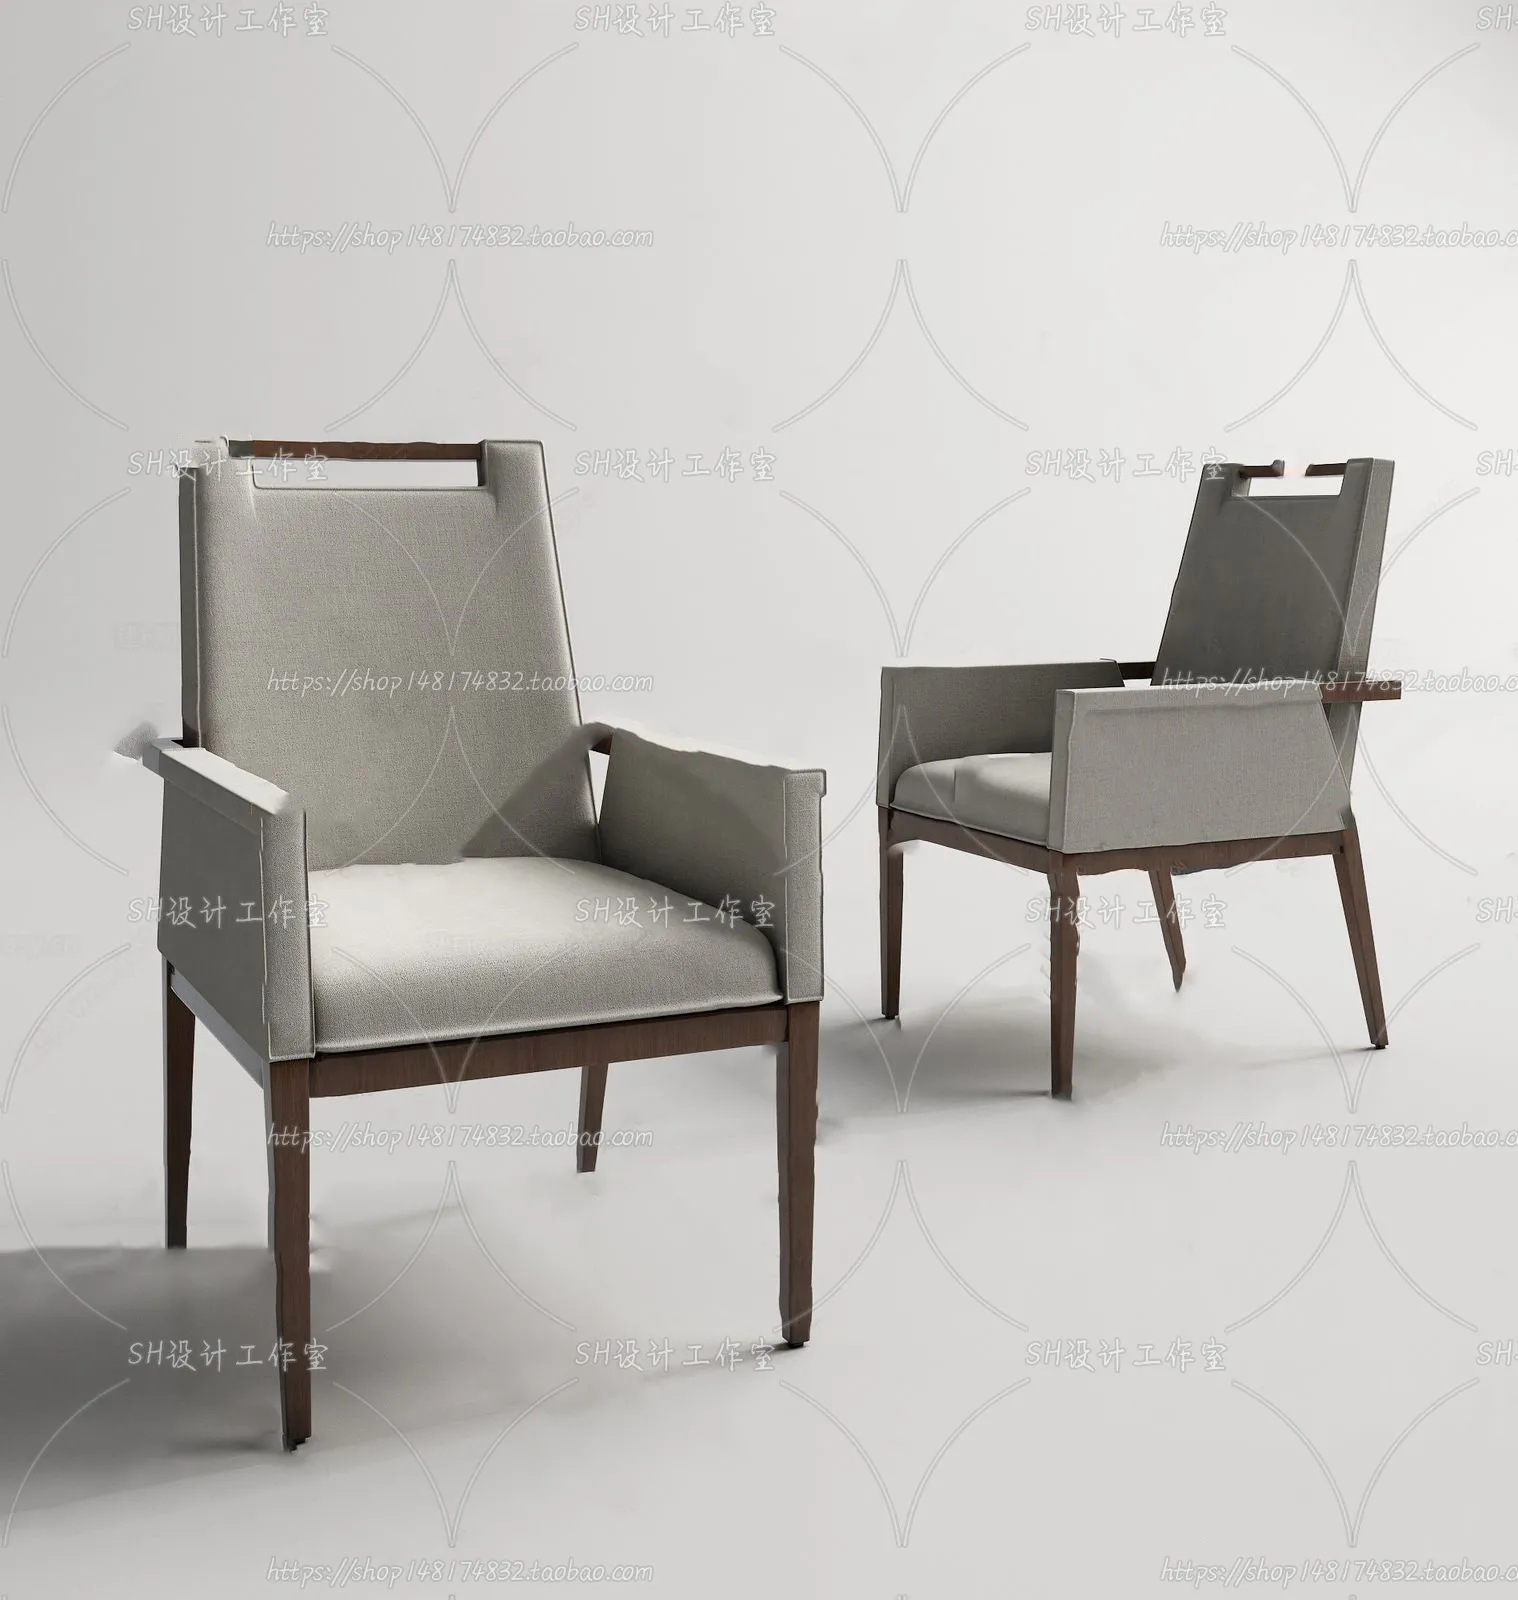 Chair – Single Chair 3D Models – 1956